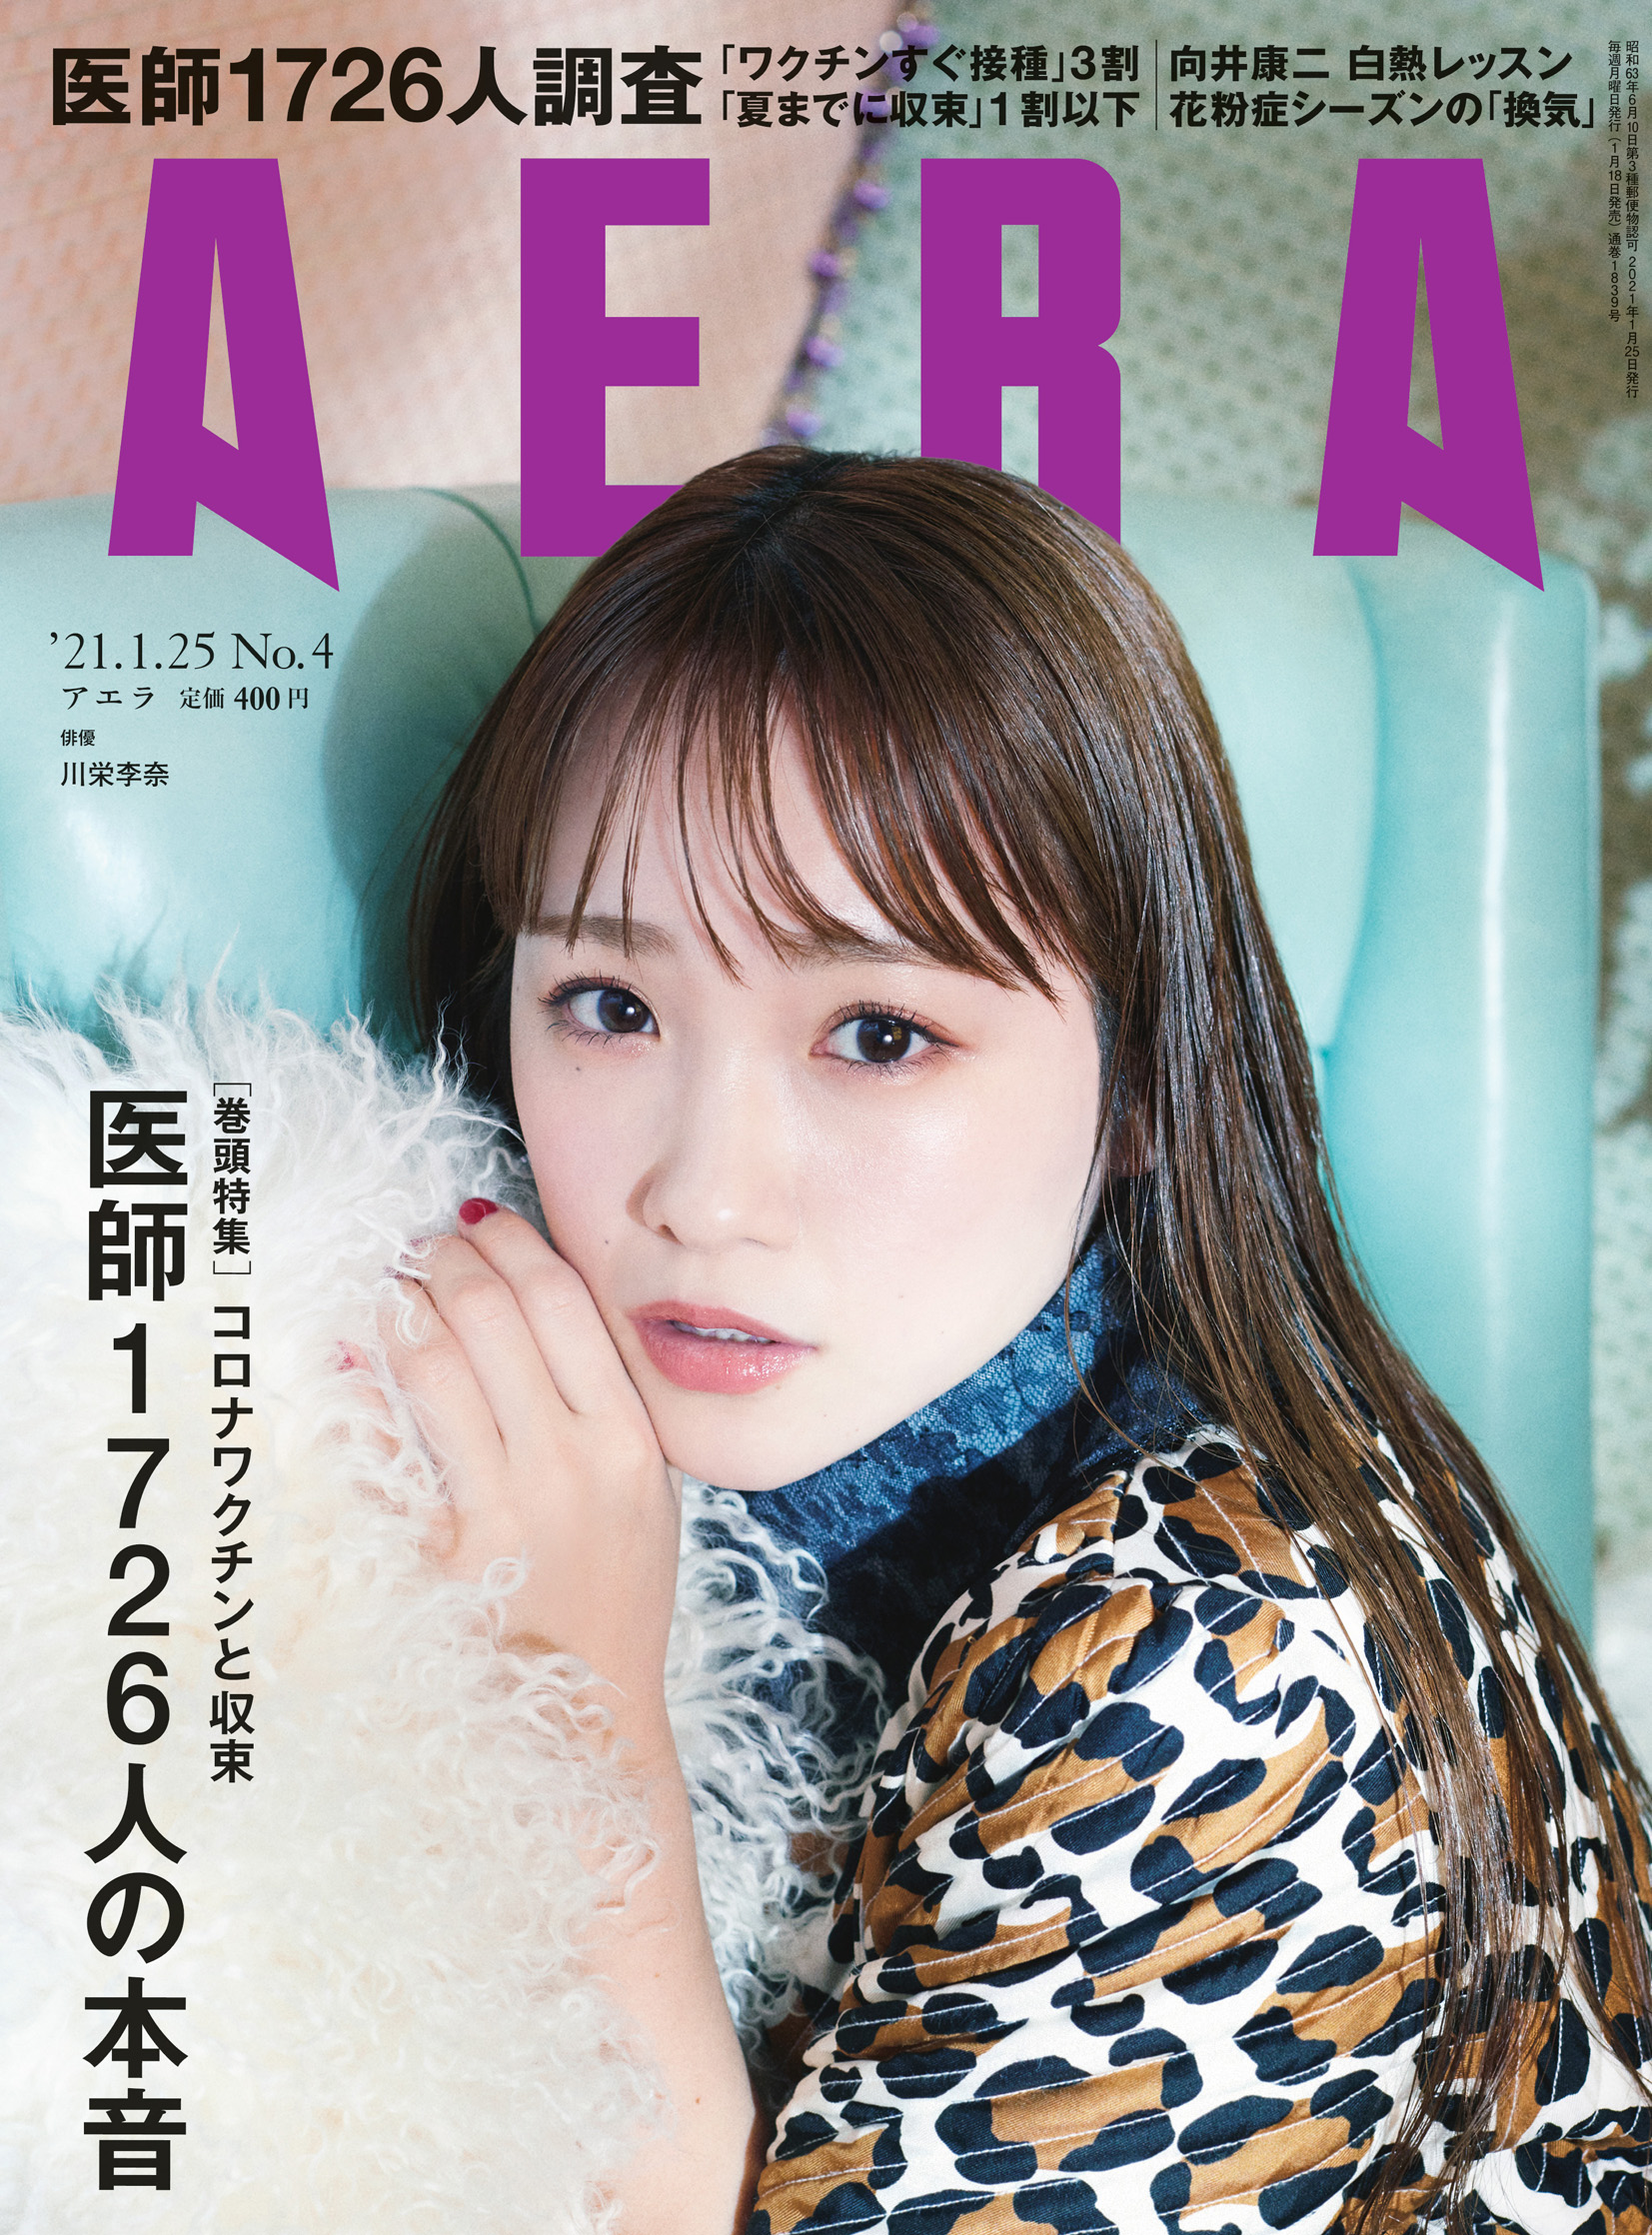 1月18日発売のAERA「向井康二が学ぶ 白熱カメラレッスン」に岩合光昭